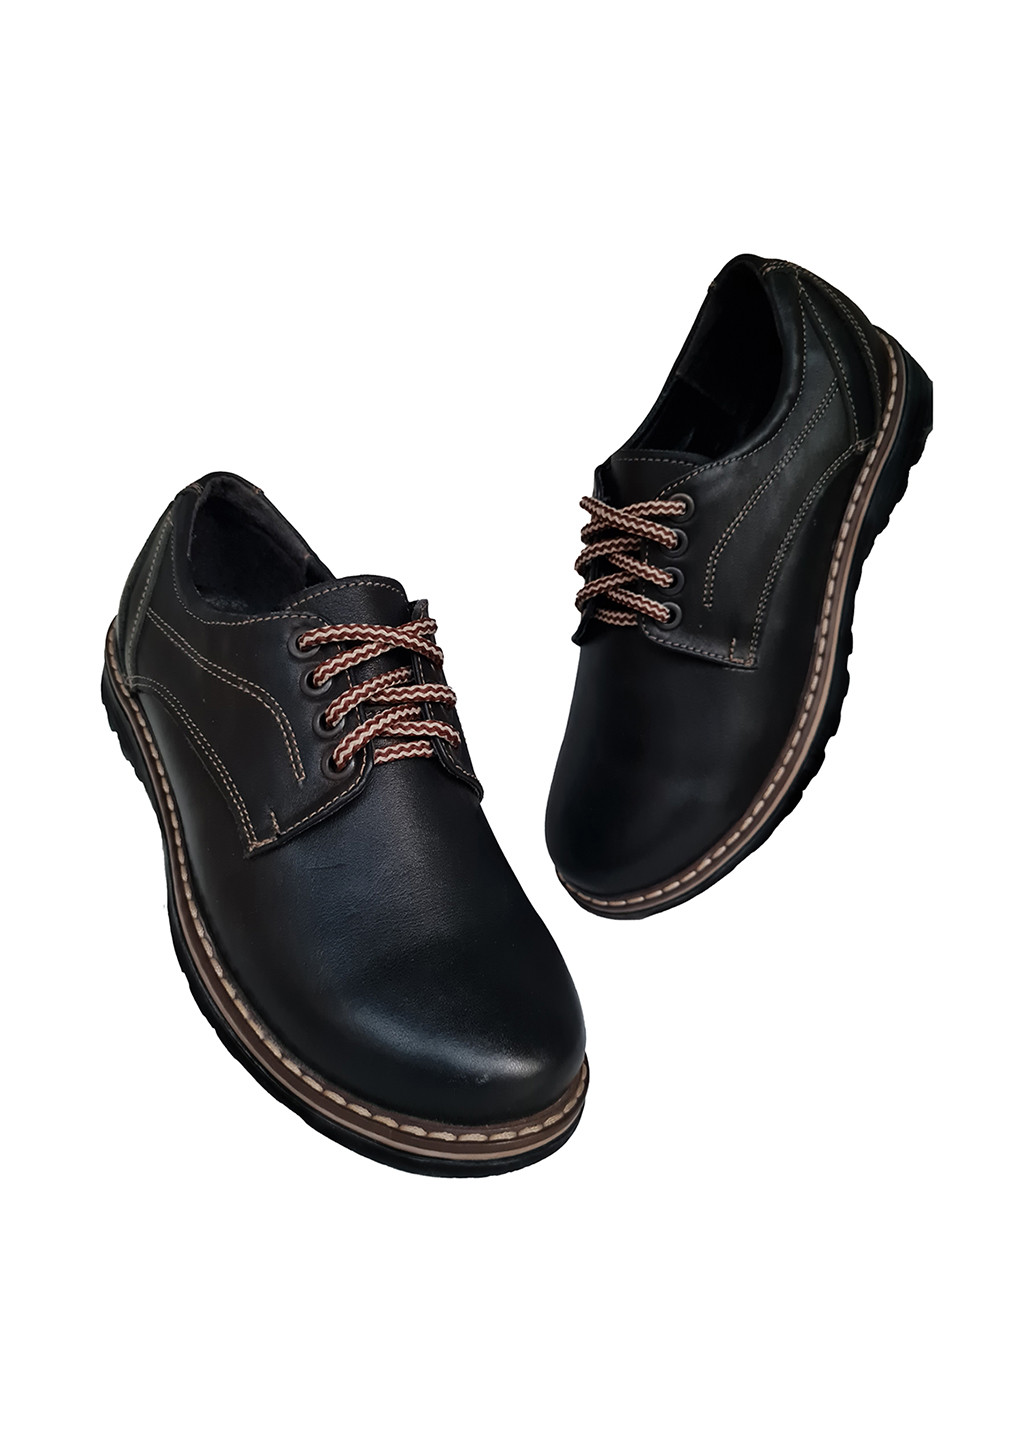 Темно-коричневые туфли со шнурками ABC